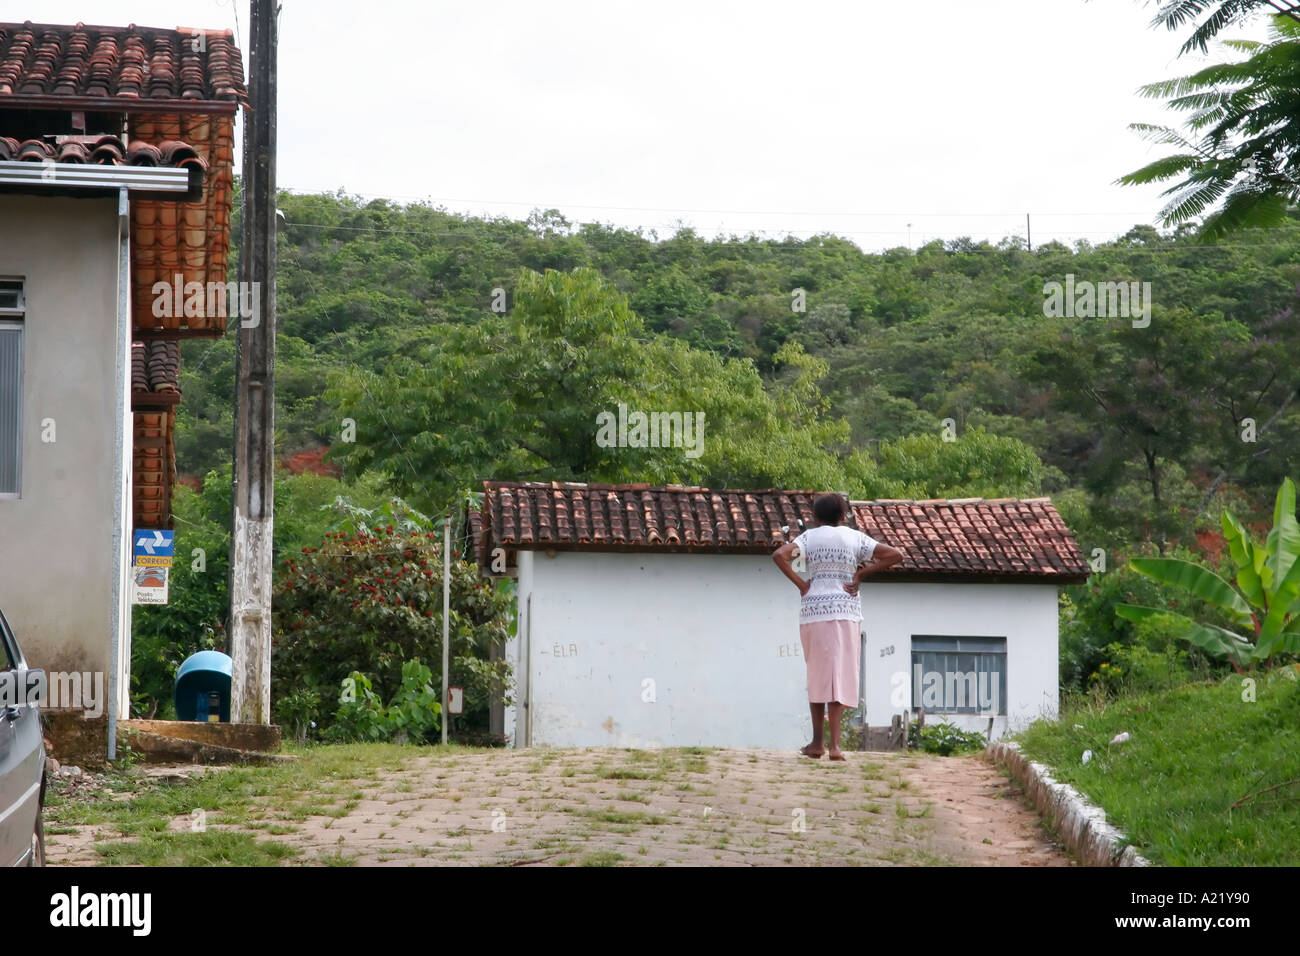 Femme en street village près de Belo Horizonte, Minas Gerais Brésil Amérique du Sud Banque D'Images